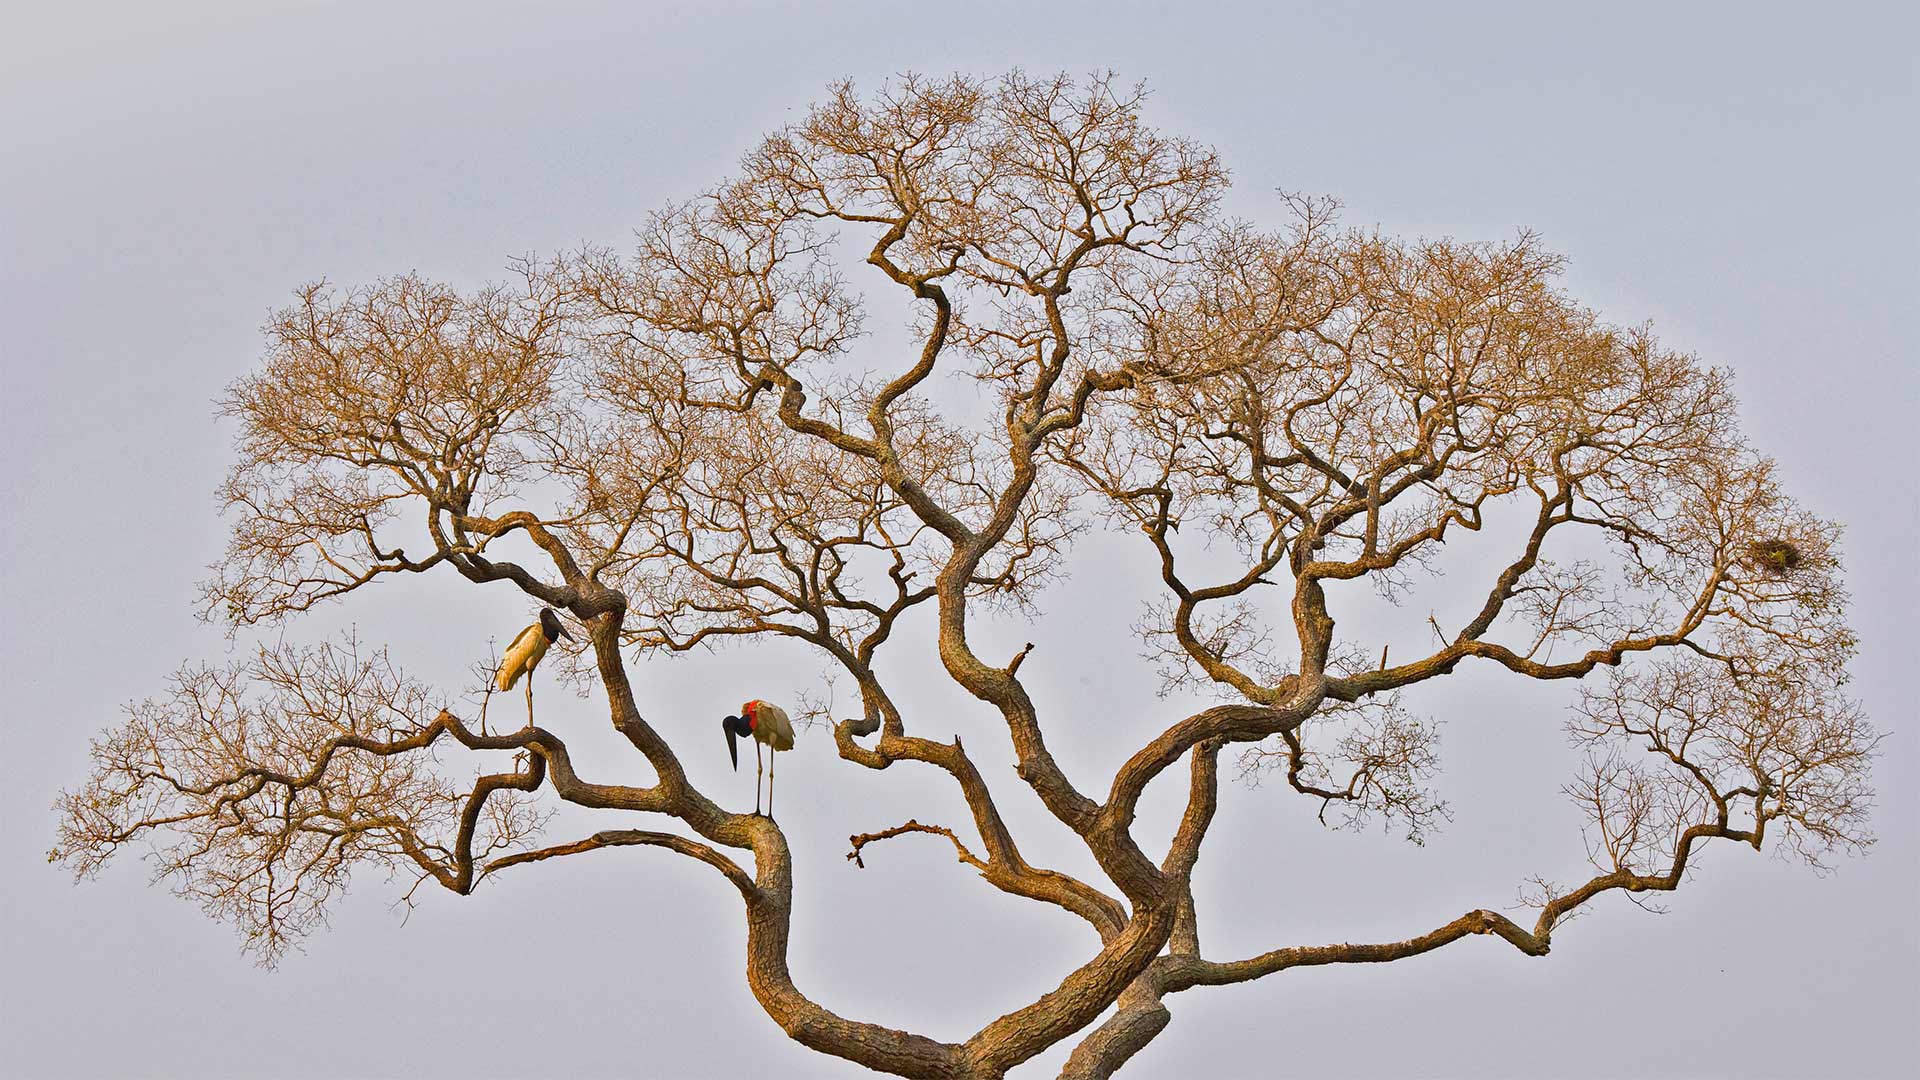 Jabiru storks in the Pantanal of Brazil - Juan-Carlos Munoz